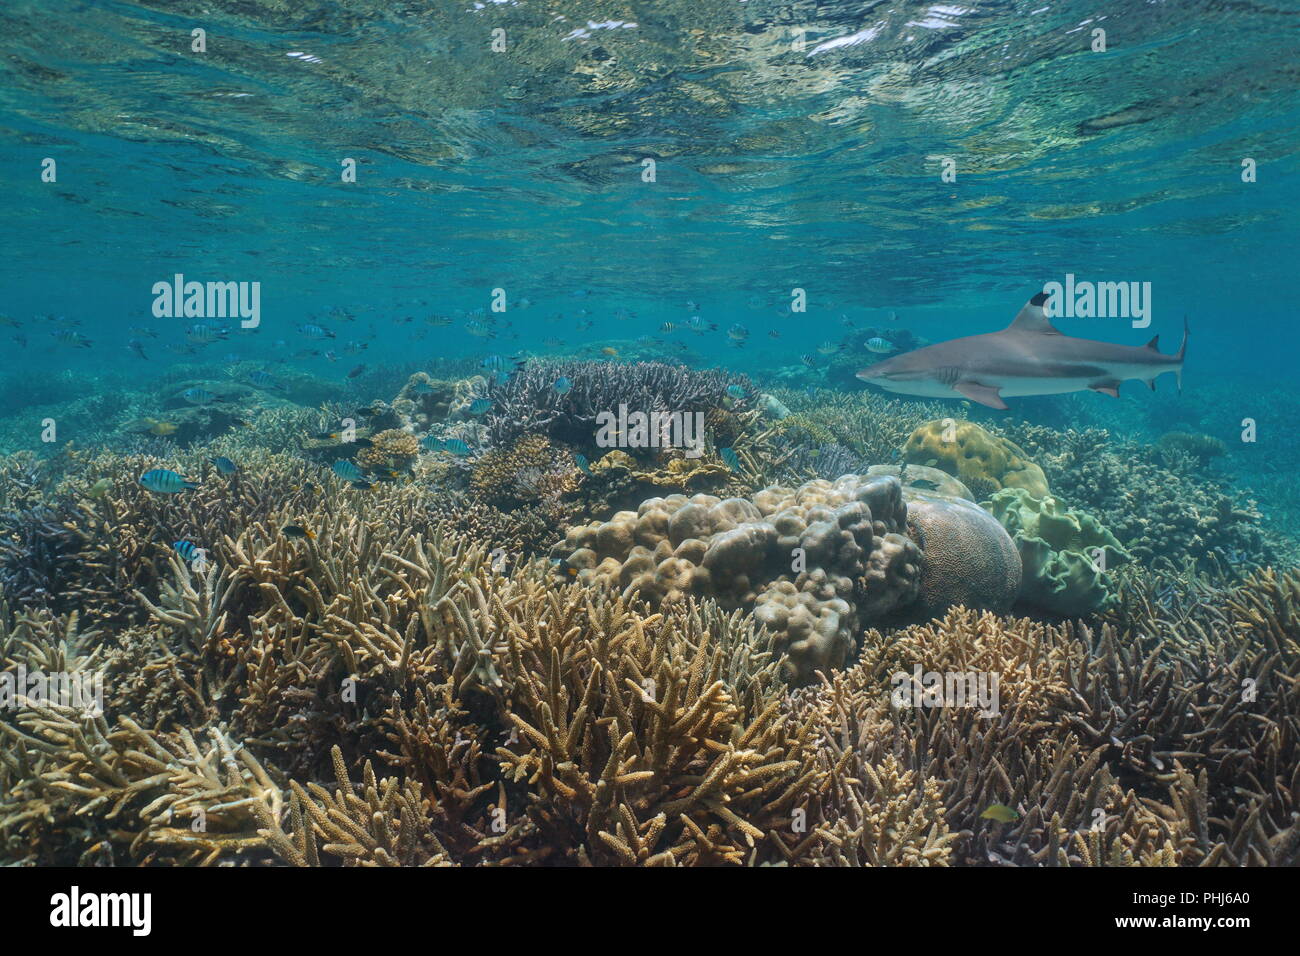 Récif de corail sain avec un requin récif à pointe noire sous l'eau, océan Pacifique, Nouvelle-Calédonie, Océanie Banque D'Images